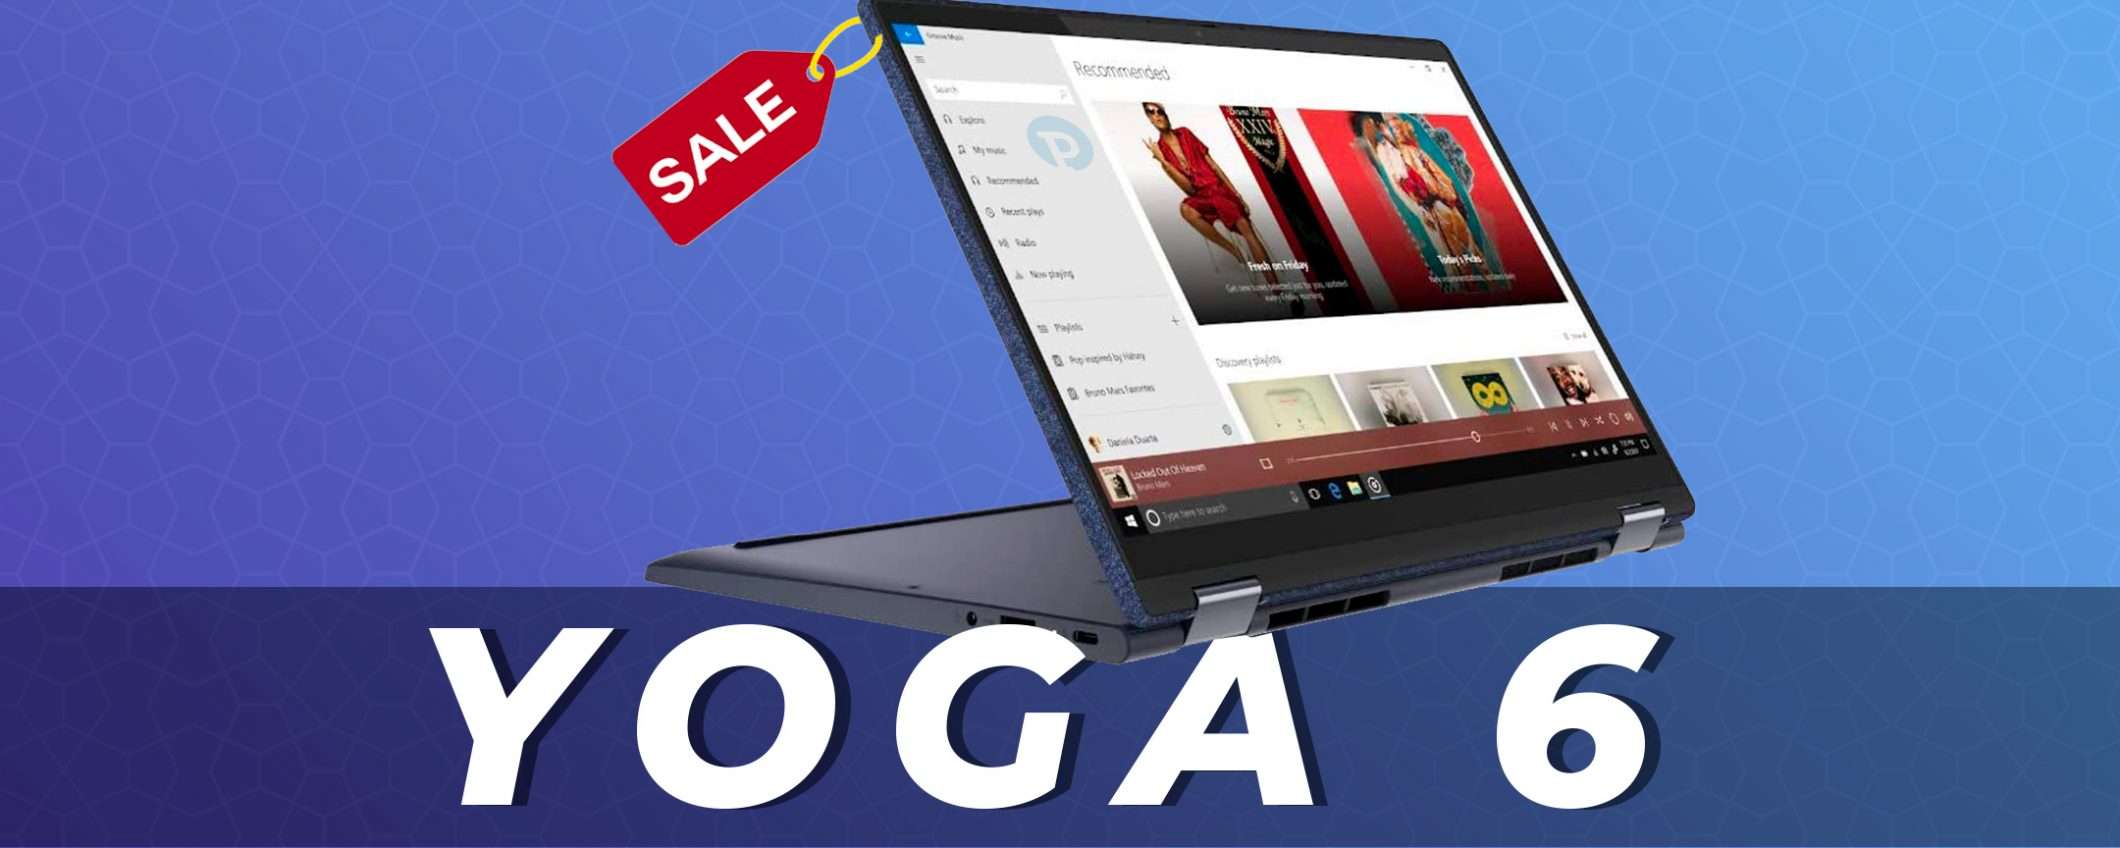 Lenovo Yoga 6: Ryzen 7 e 16GB di RAM in offerta oggi (-100€)